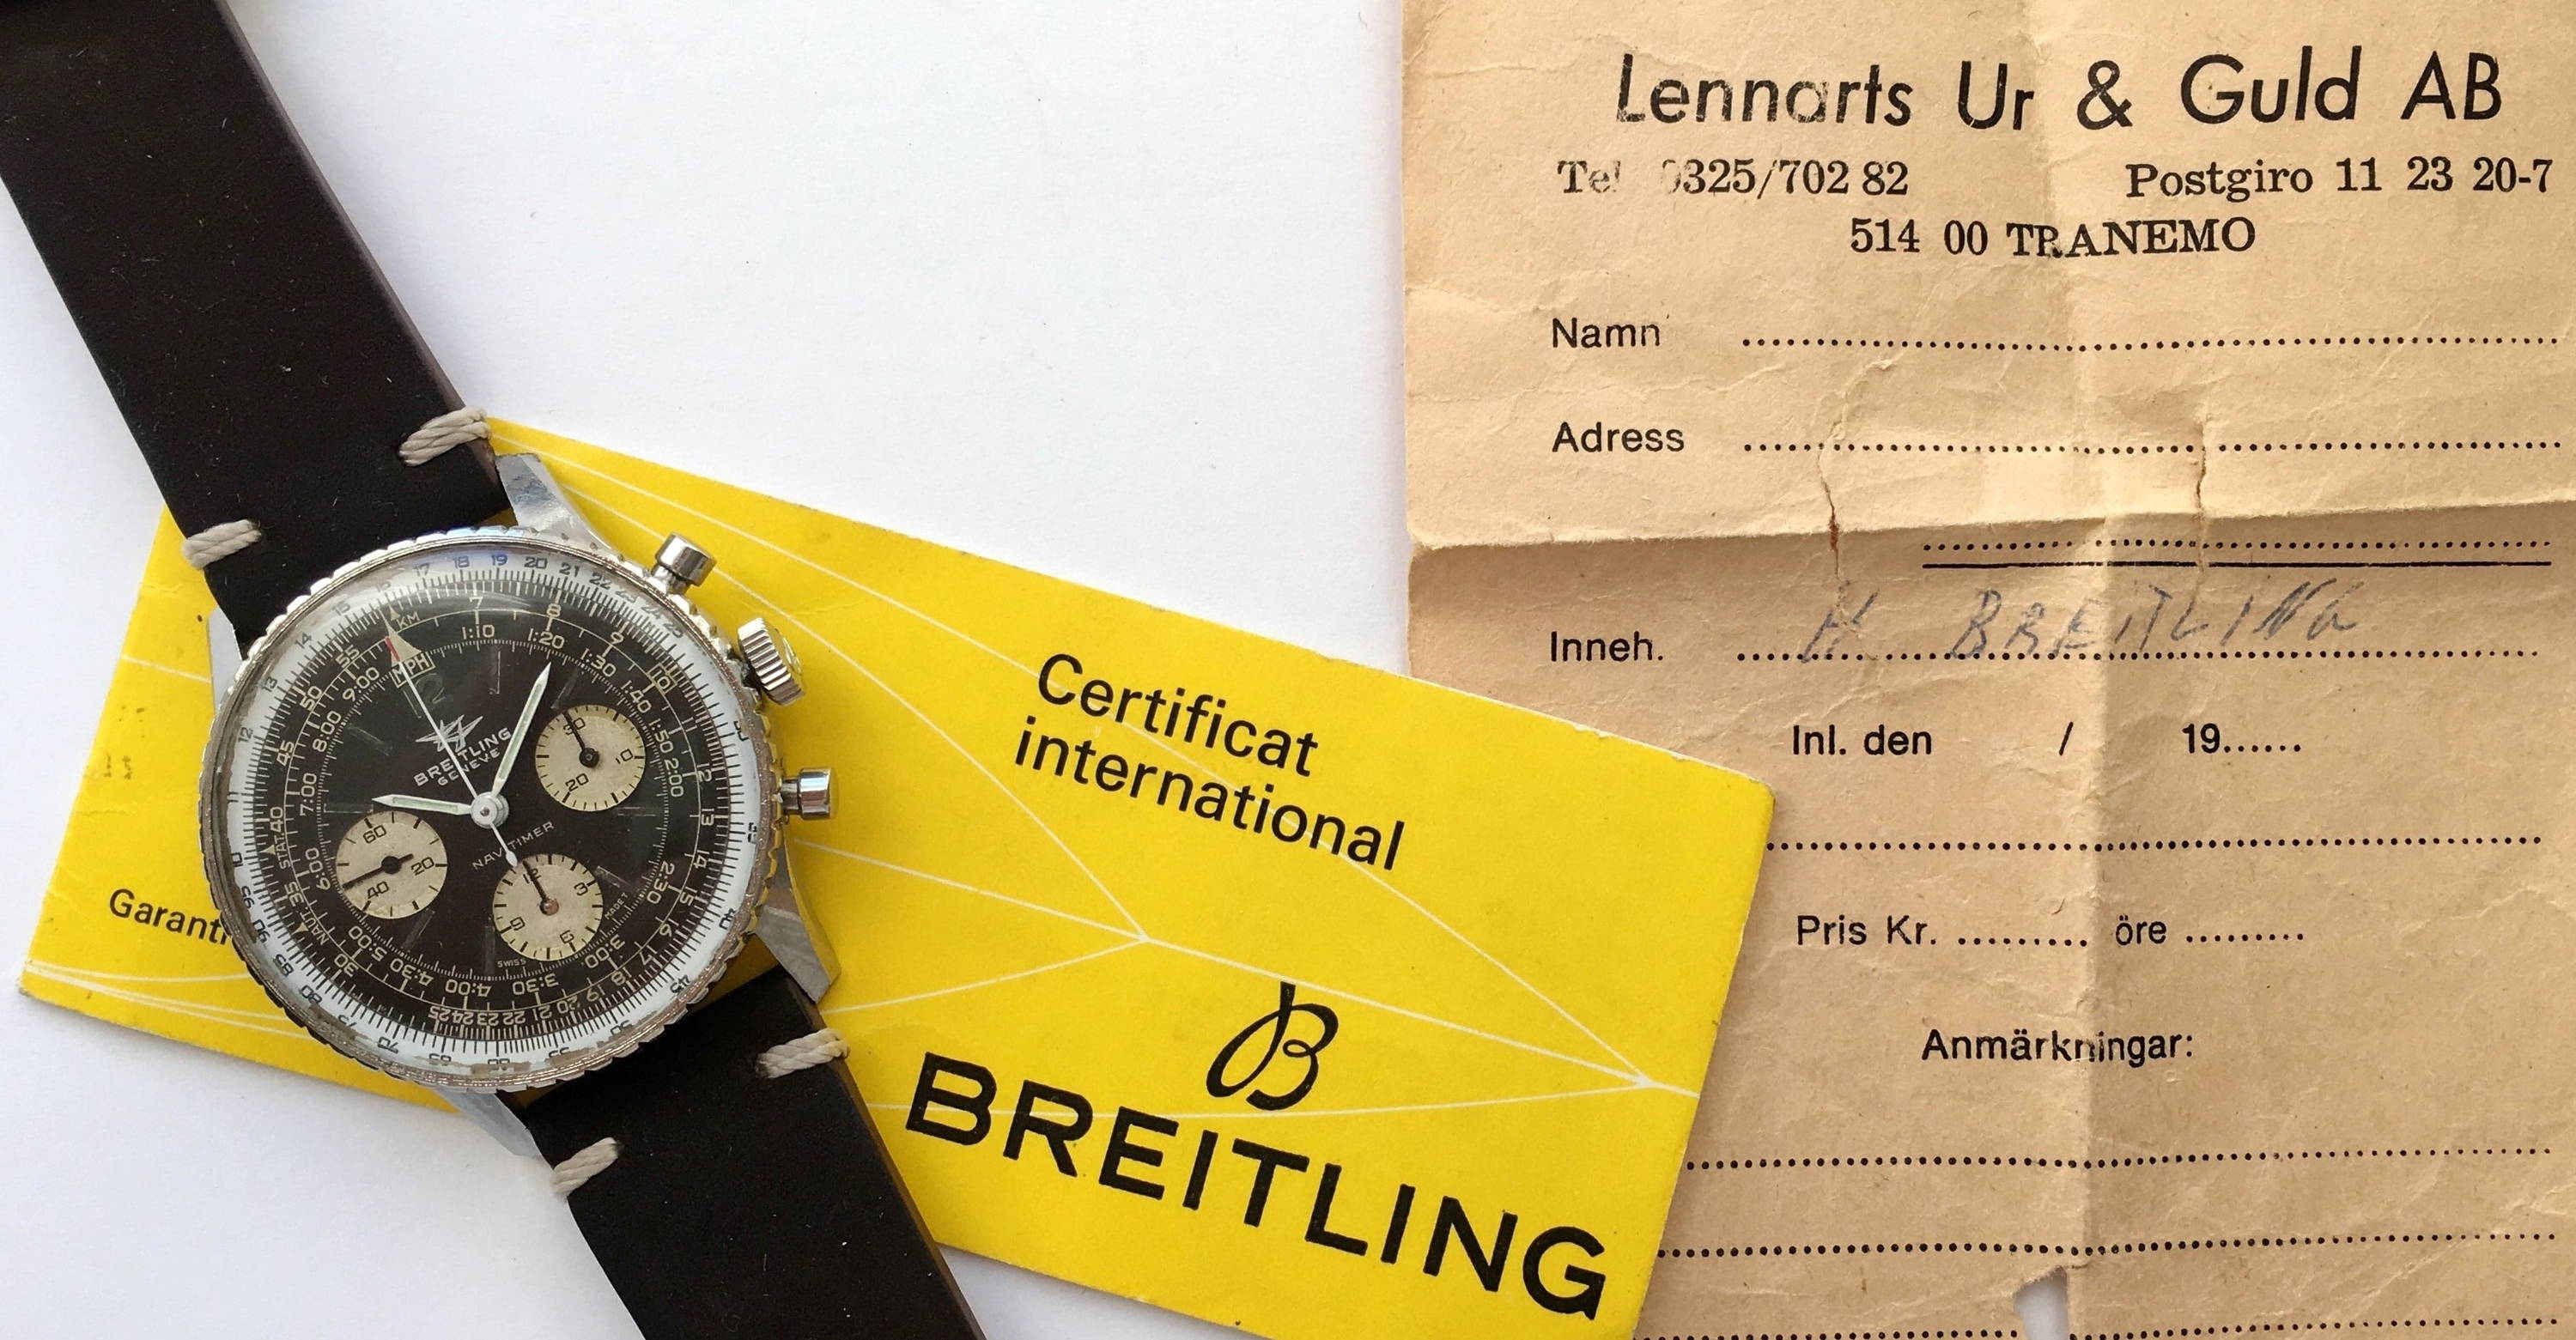 Comment identifier une fausse montre Breitling ?